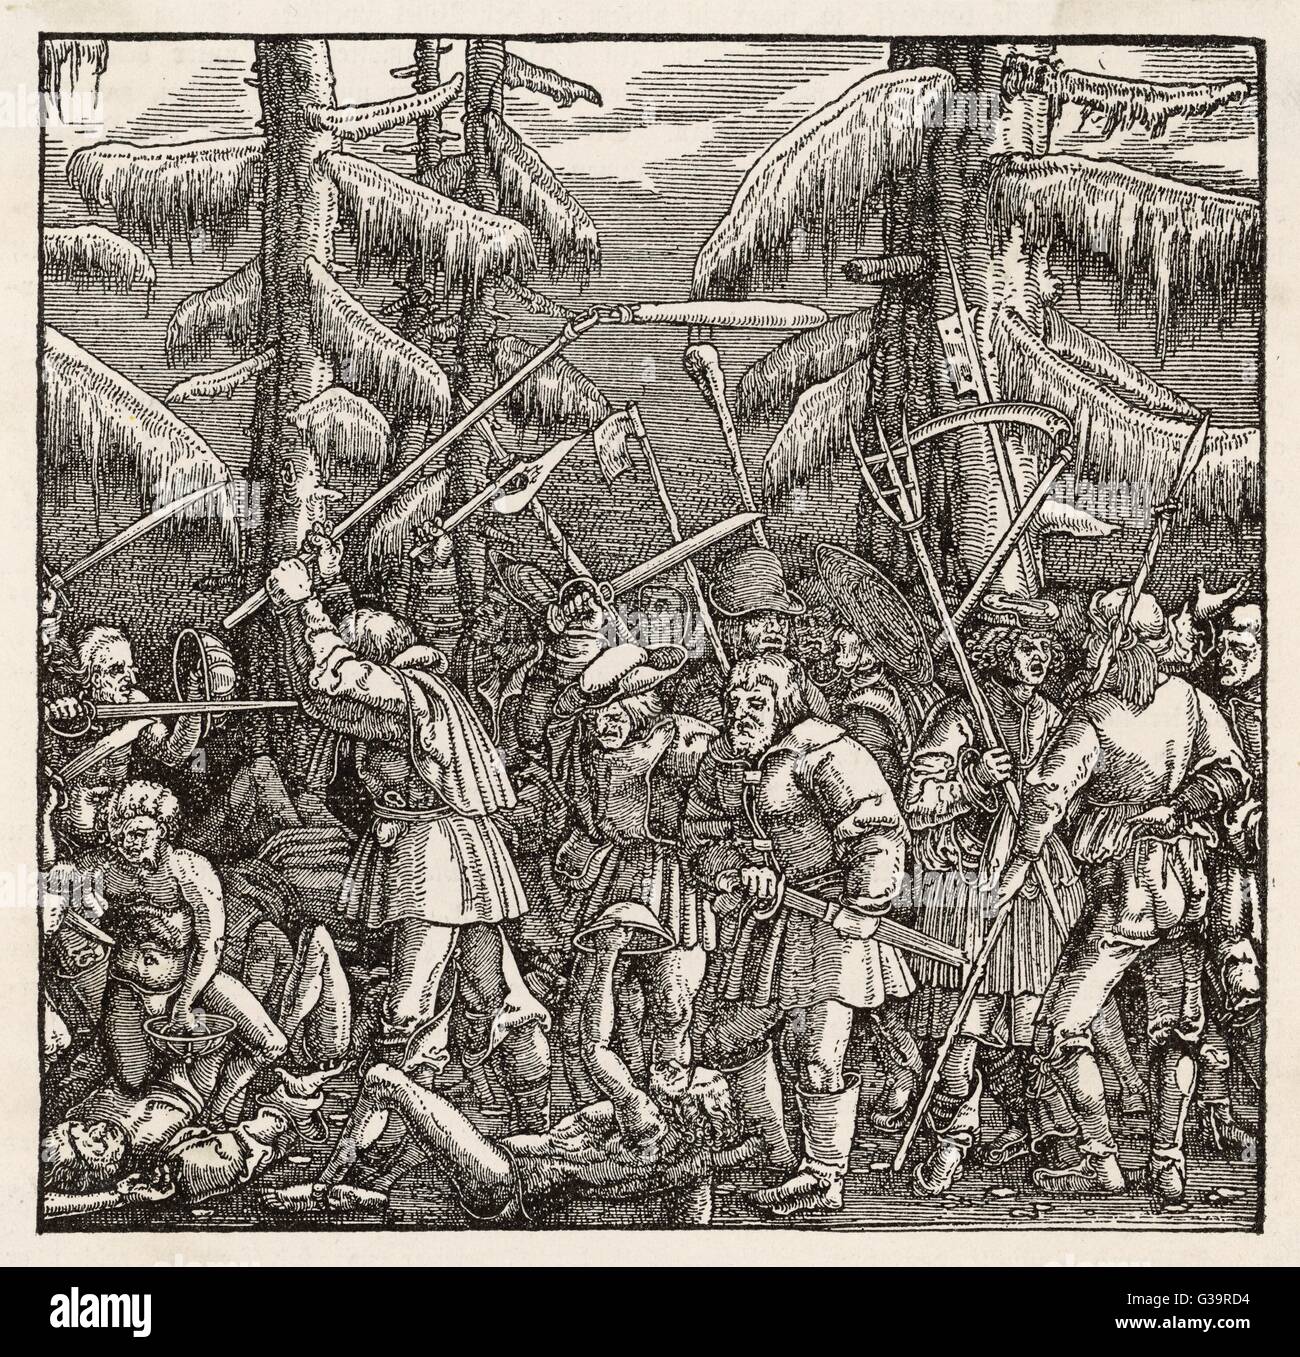 Die Bauern erheben und für die Abschaffung der feudalen Abgaben, Leibeigenschaft und zehnten Tag Revolte: 1522 Stockfoto